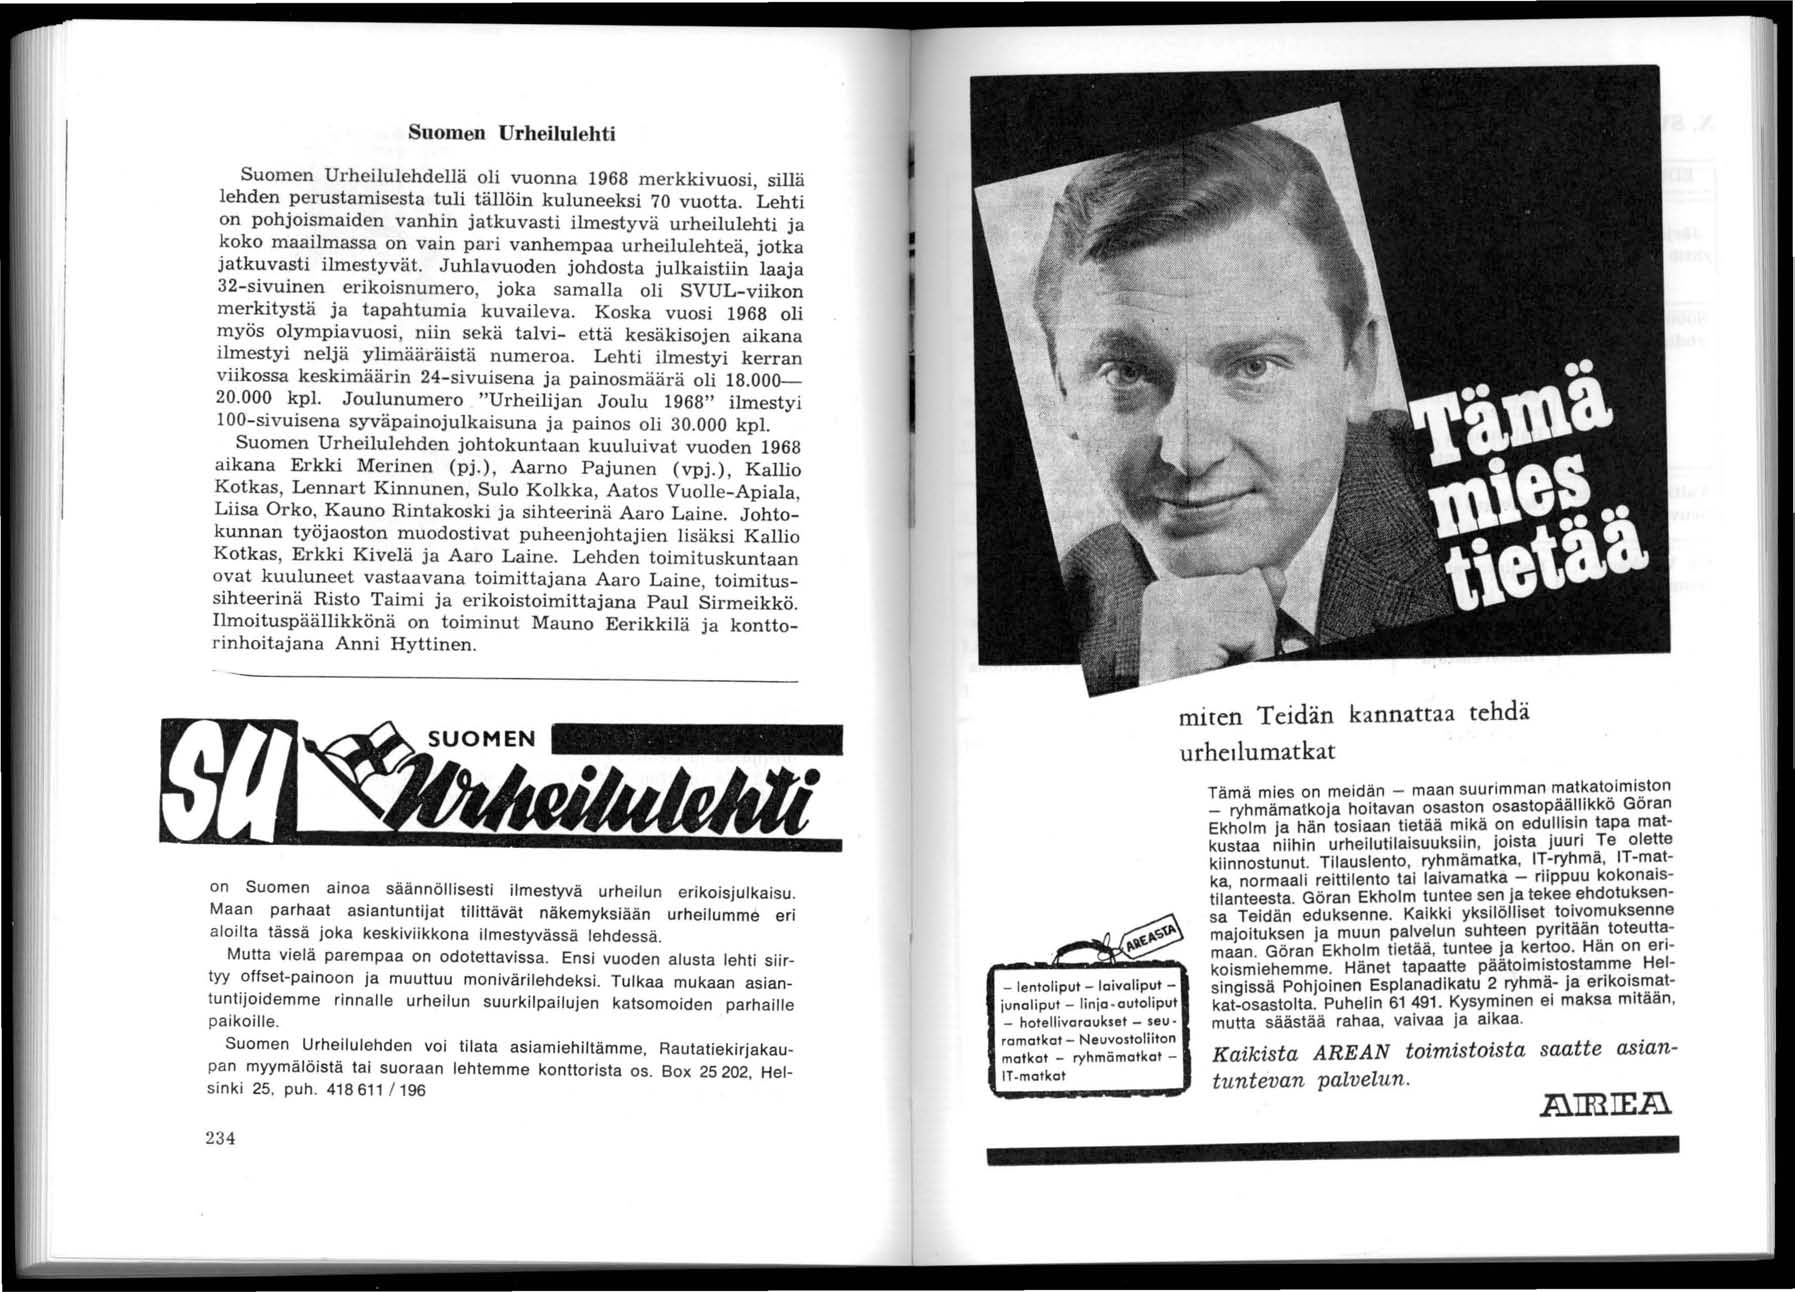 Suomen Urheilulehti Suomen Urheilu lehdellä oli vuonna 968 merkkivuosi, sillä lehden perustamisesta tuli tällöin kuluneeksi 70 vuotta.